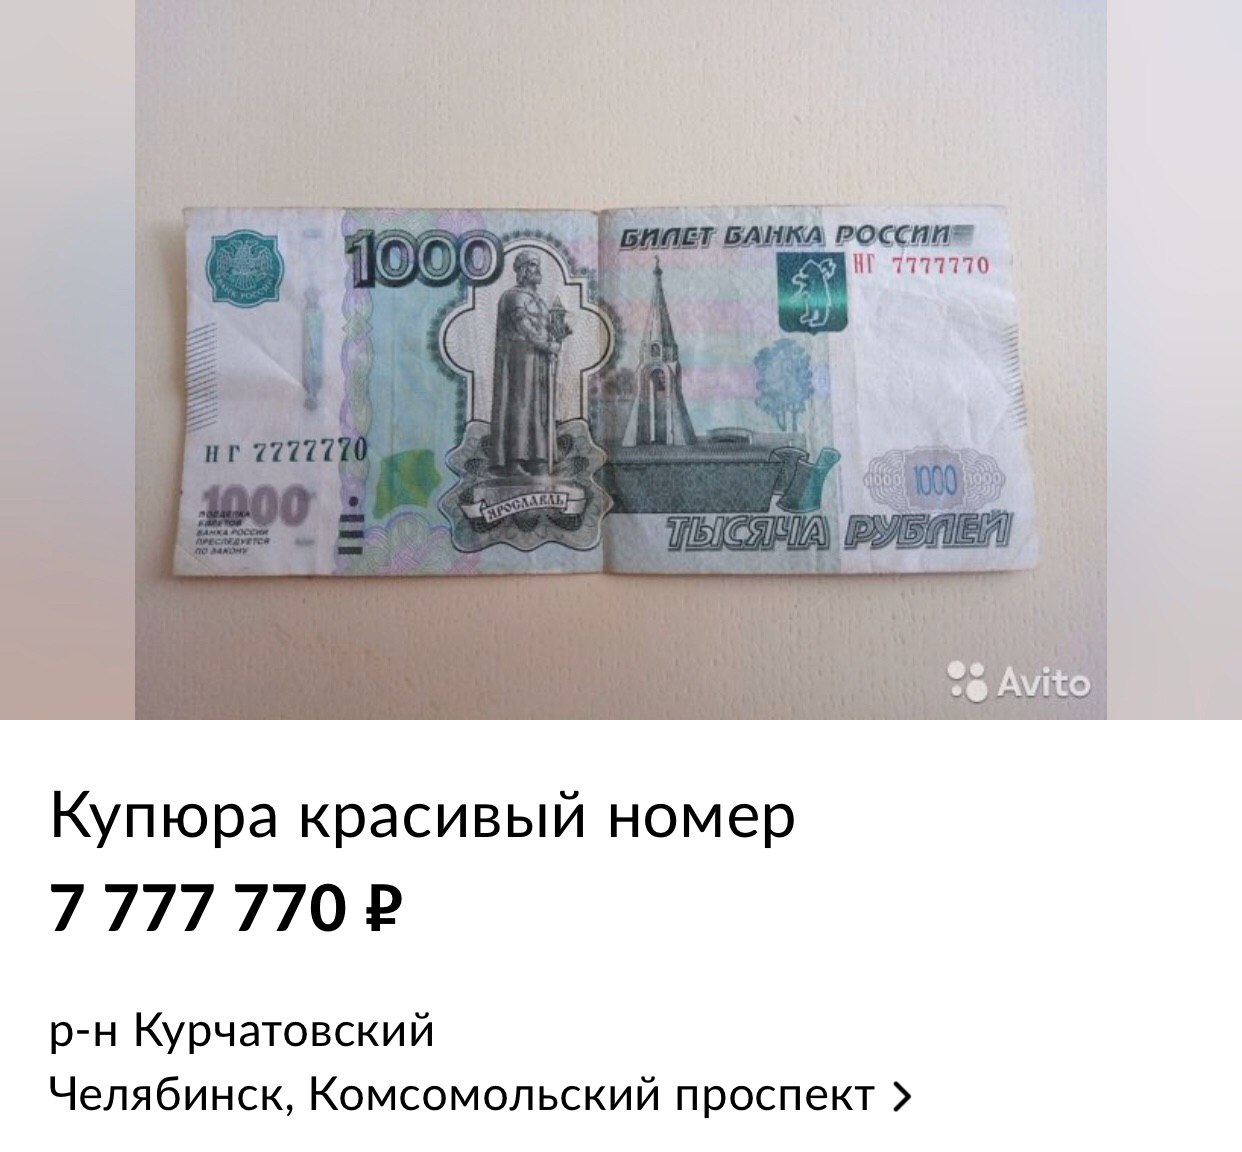 Авито куплю купюру. Номер банкноты 1000 рублей.